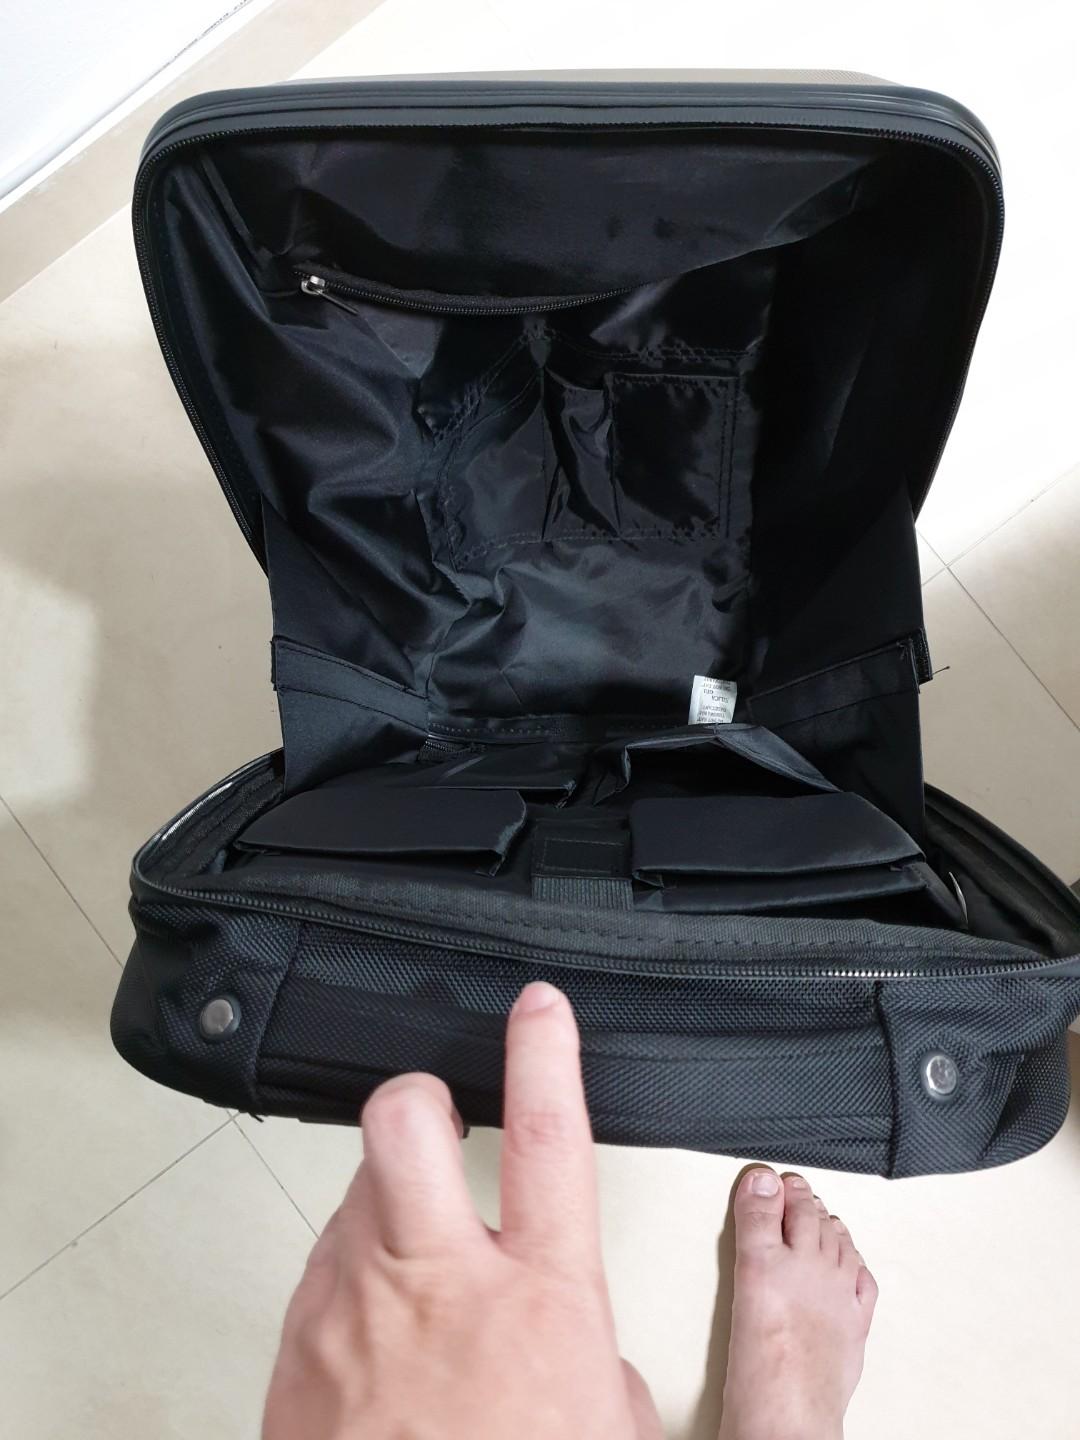 levis hard backpack